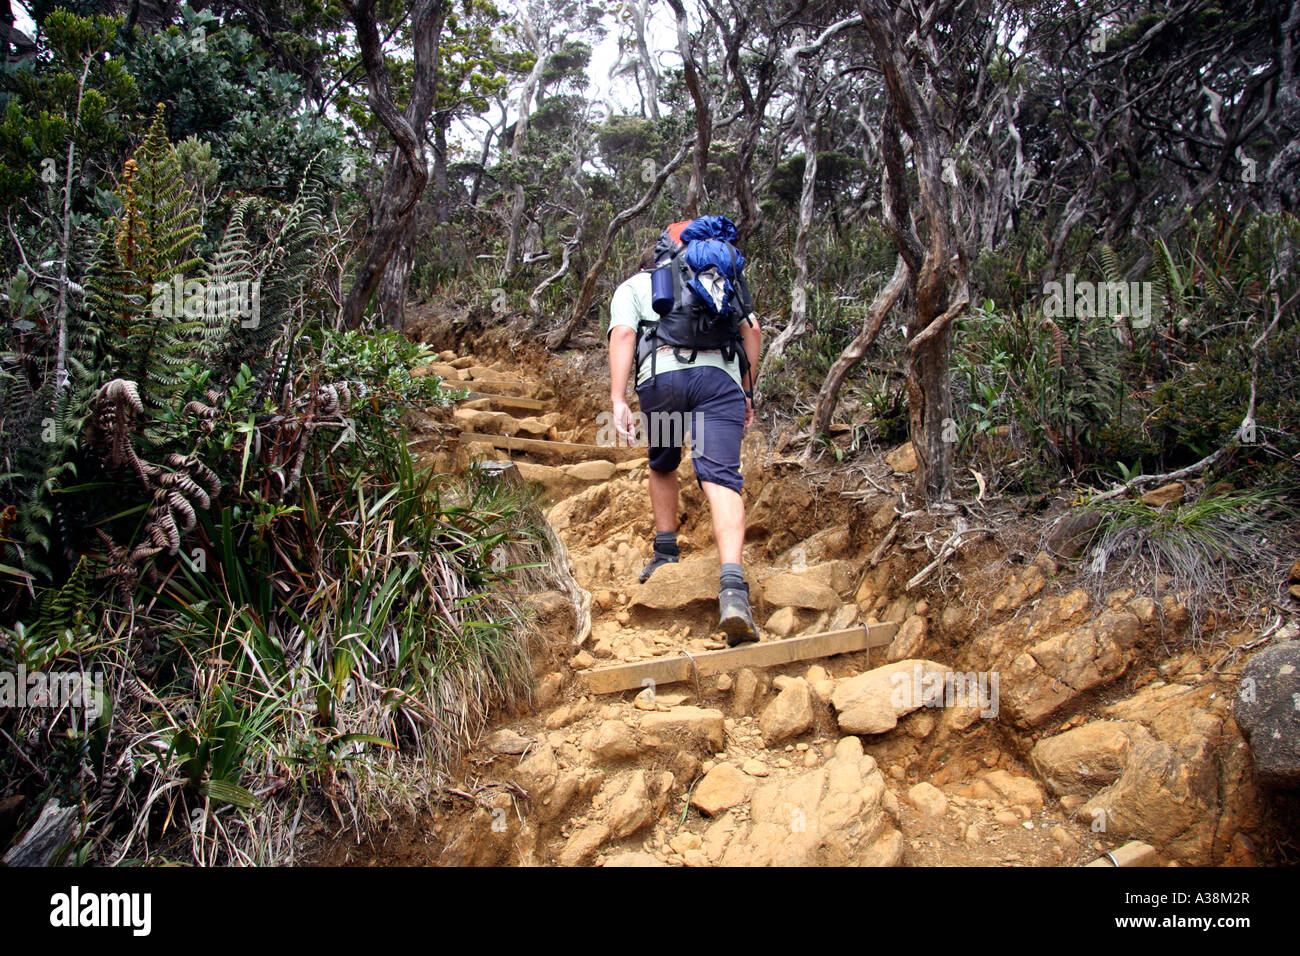 Escursionista sul sentiero attraverso la foresta di rododendri fino a Mt Kinabalu, a 4095m i più alti in Asia SE. Sabah, Borneo Malaysia Foto Stock